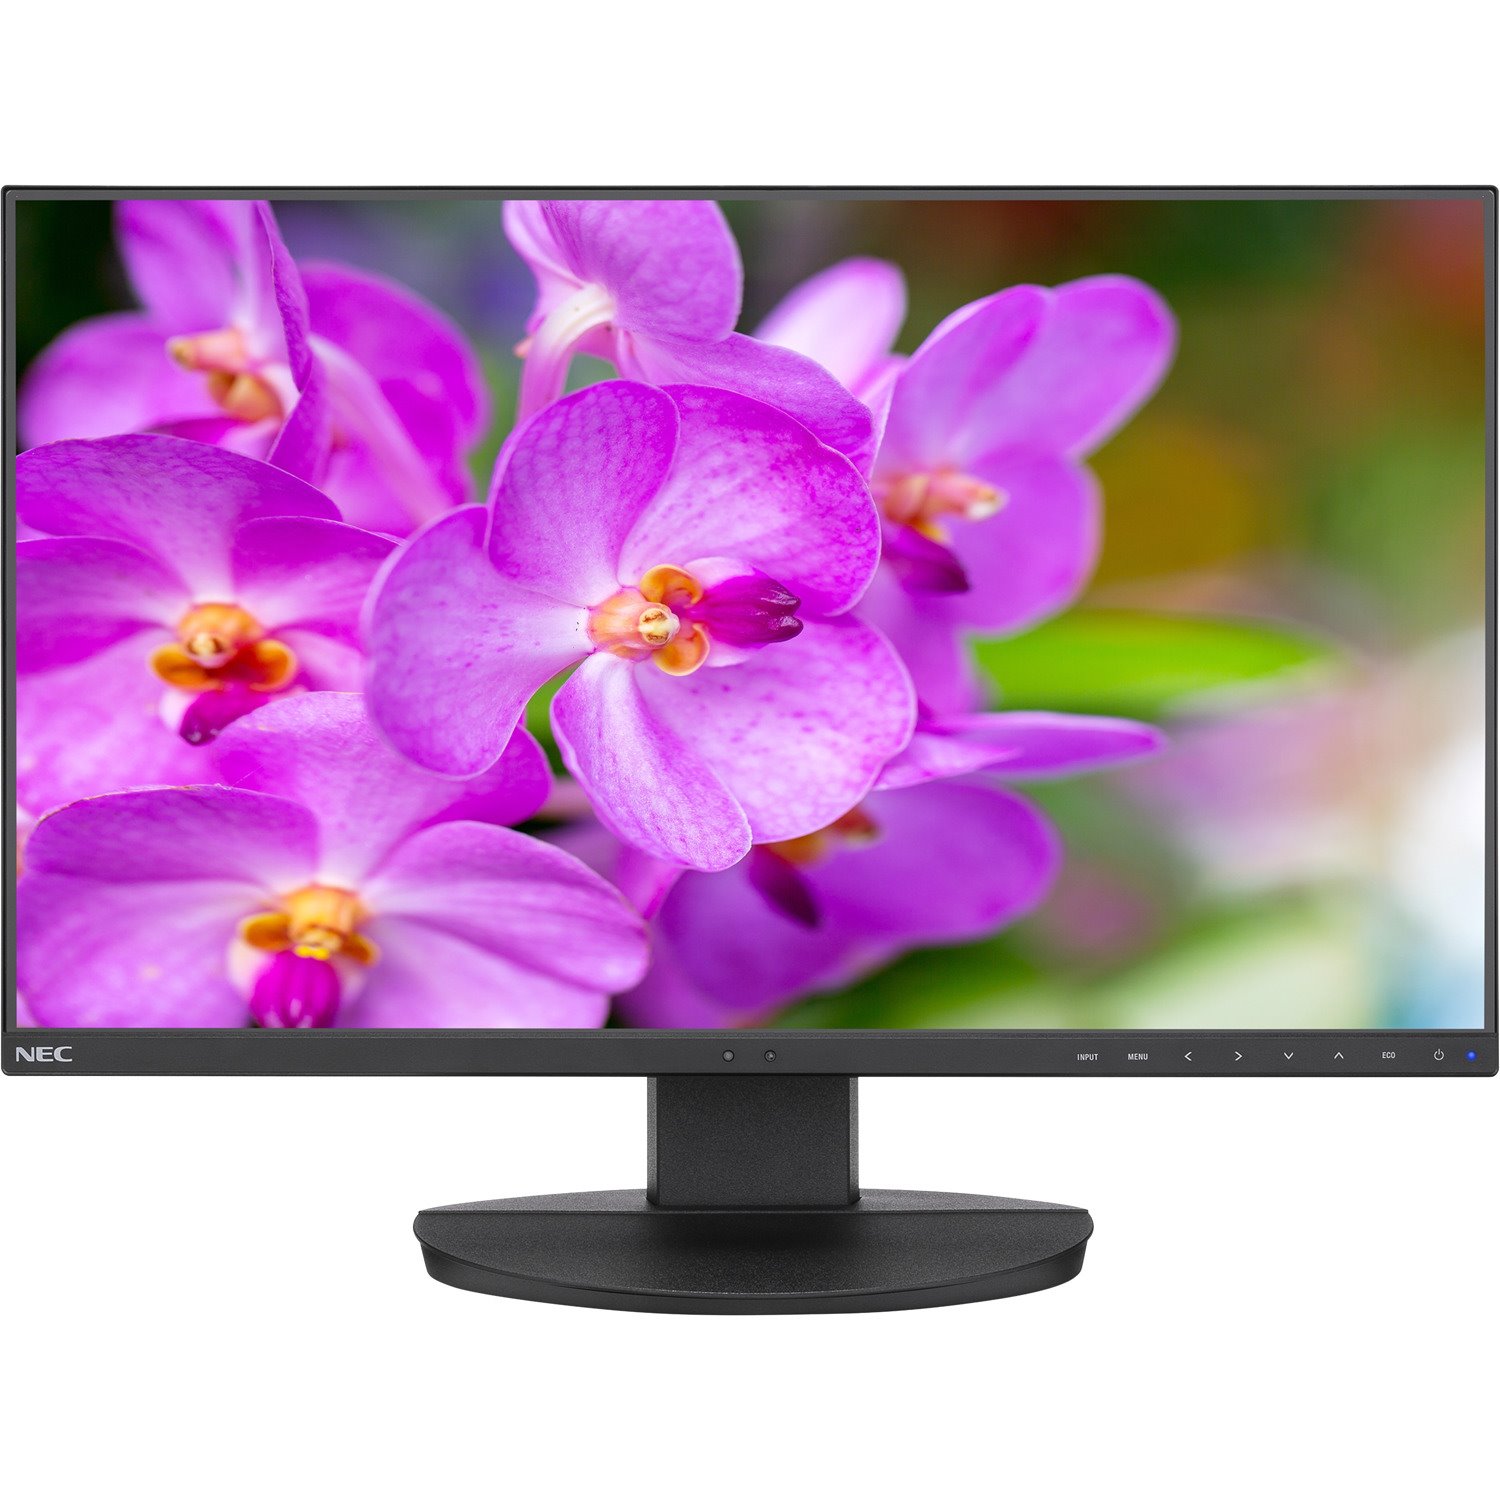 Nec 24 Full HD Business-Class Widescreen Desktop Monitor W/ Ultra-Narrow Bezel